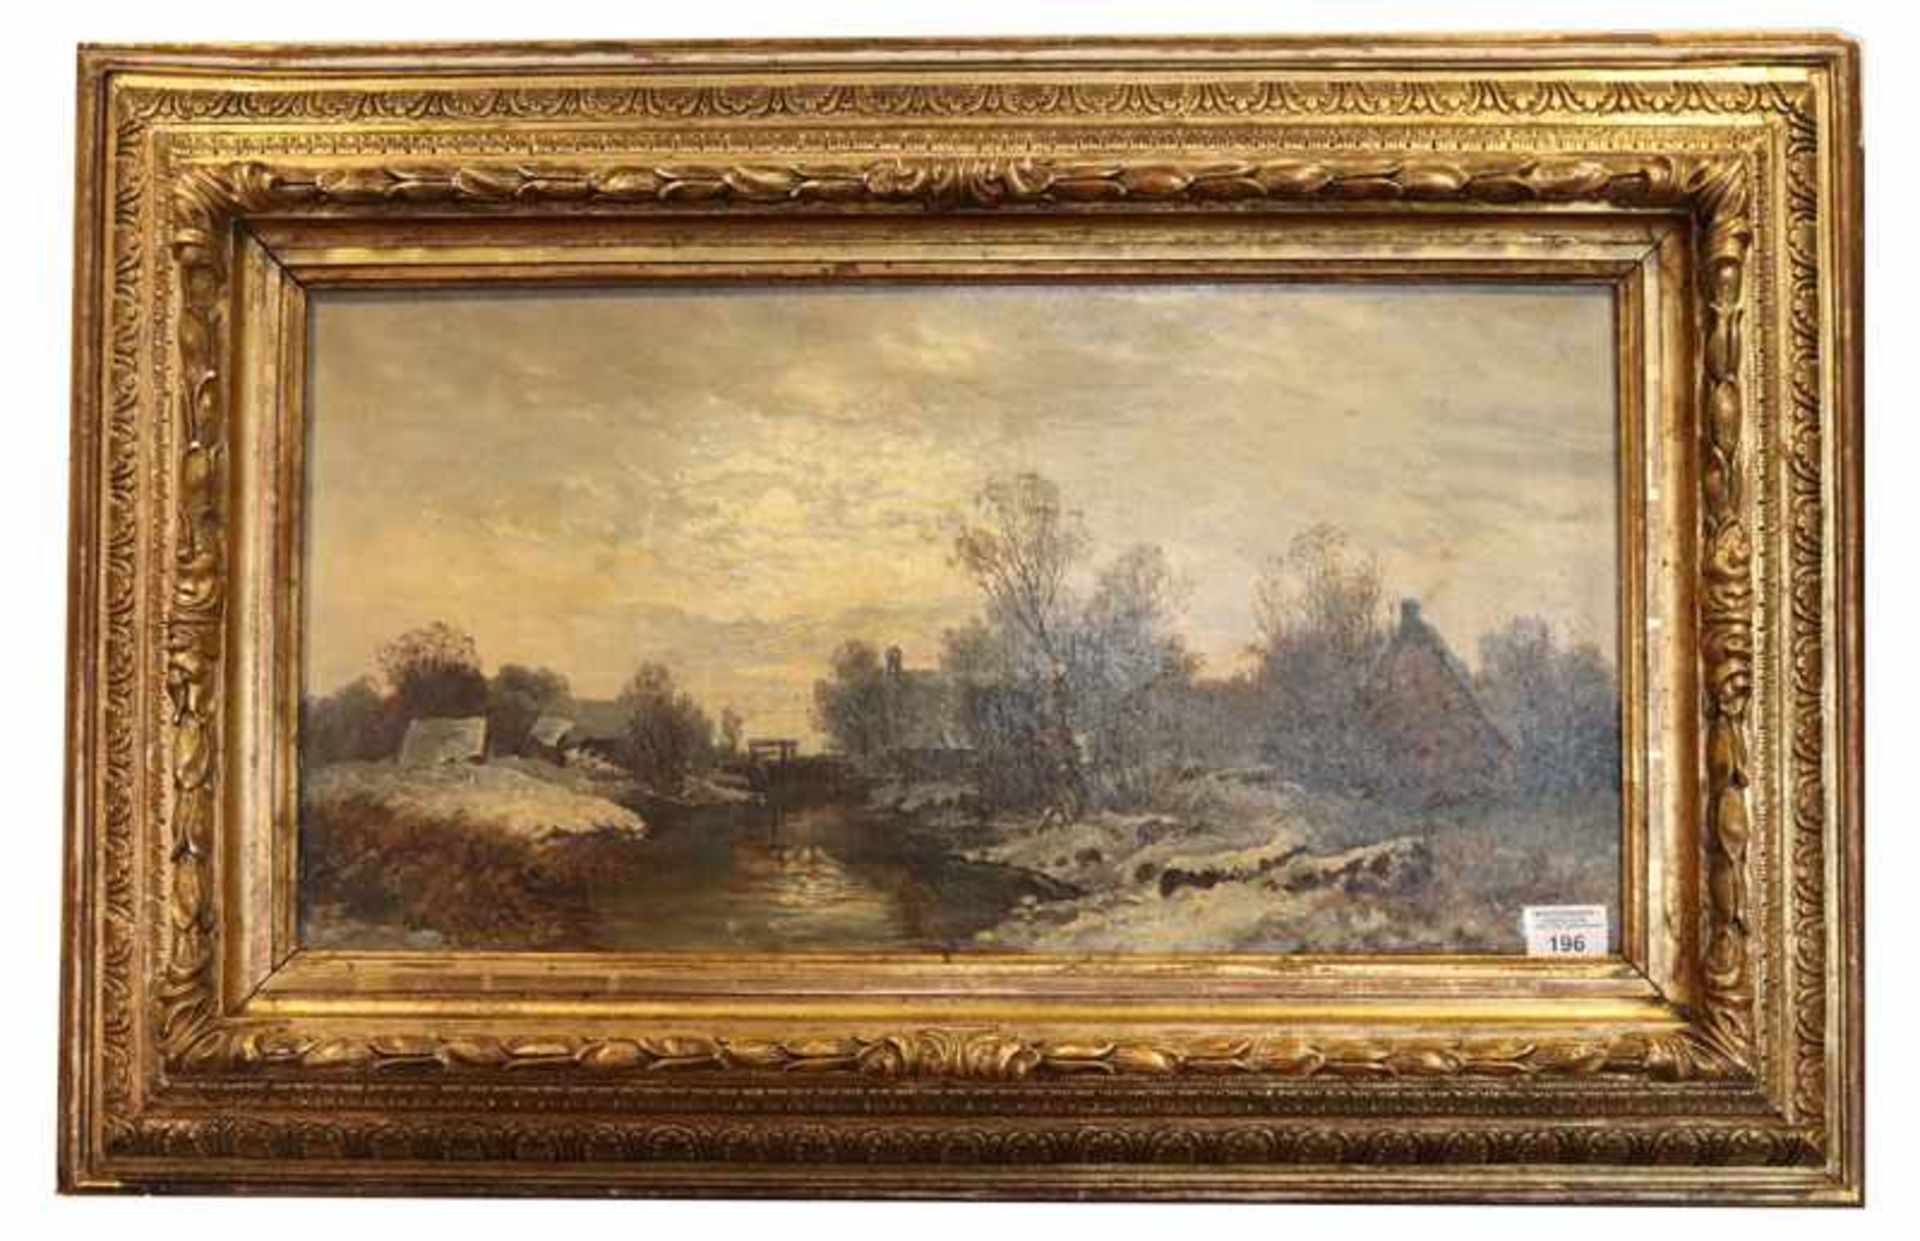 Gemälde ÖL/LW 'Dorf am Flußlauf im Winter', signiert J. (Joseph) Wenglein, * 1845 München + 1919 Bad